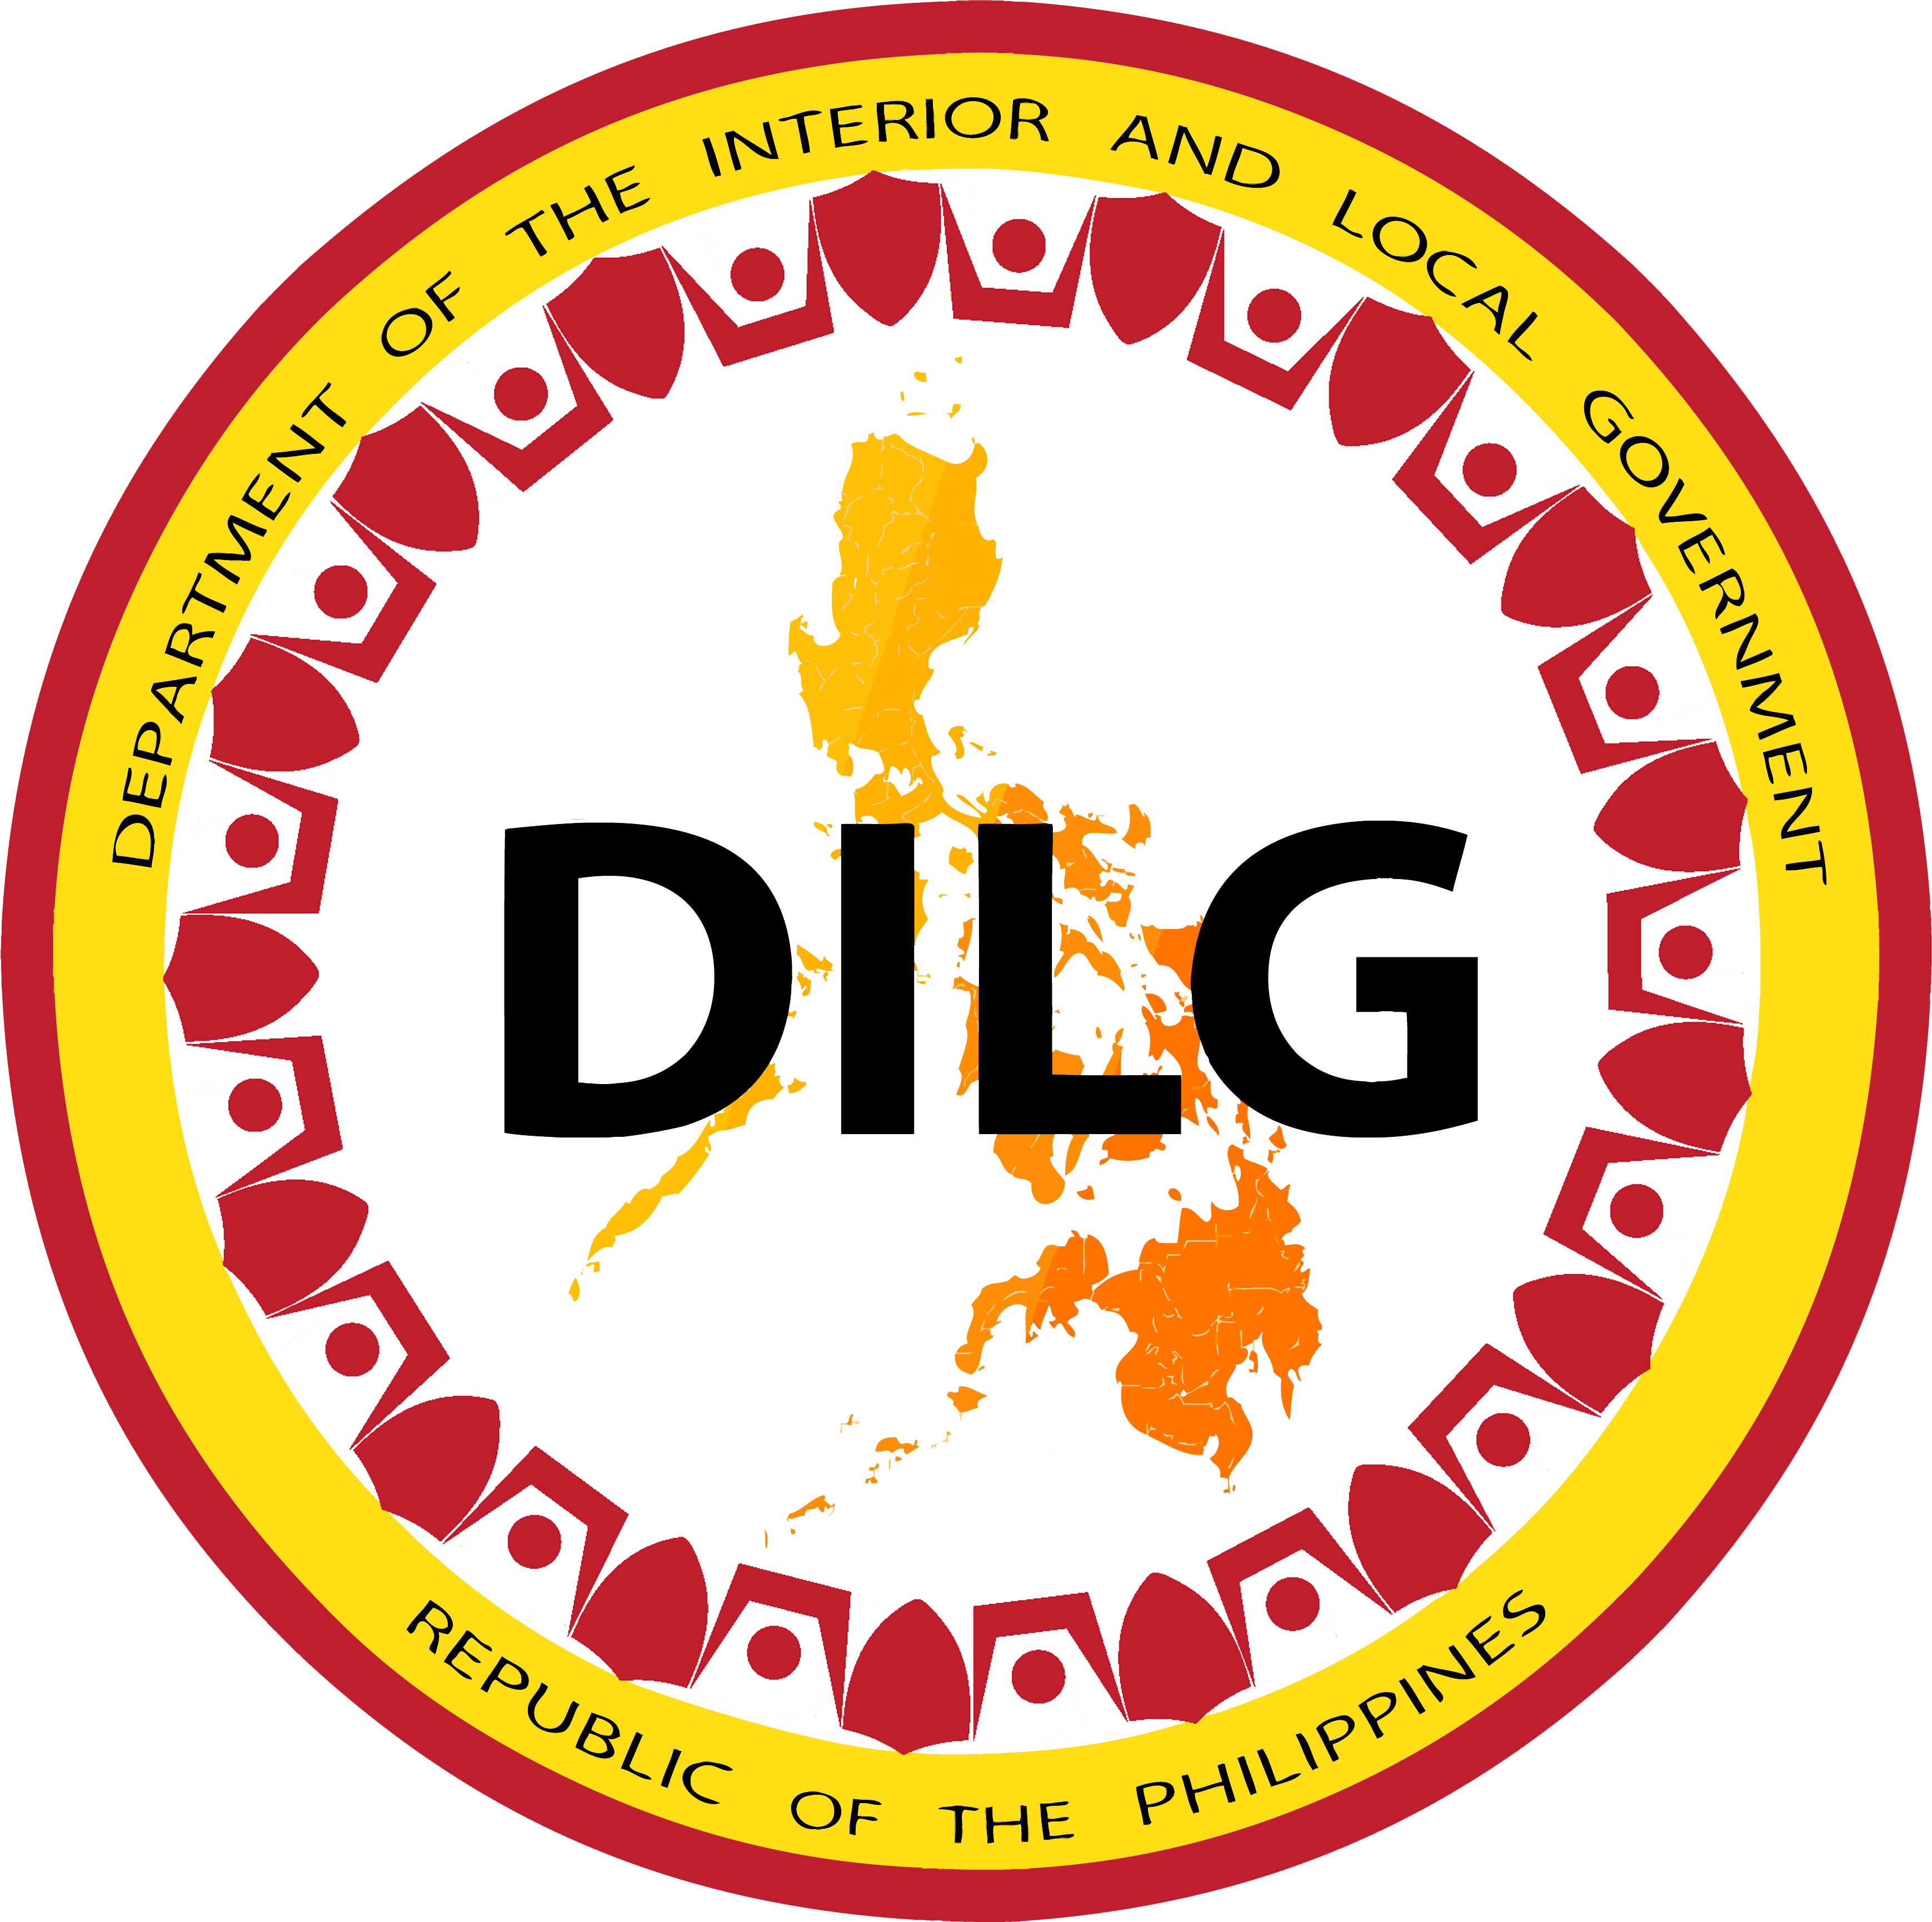 DILG Logo